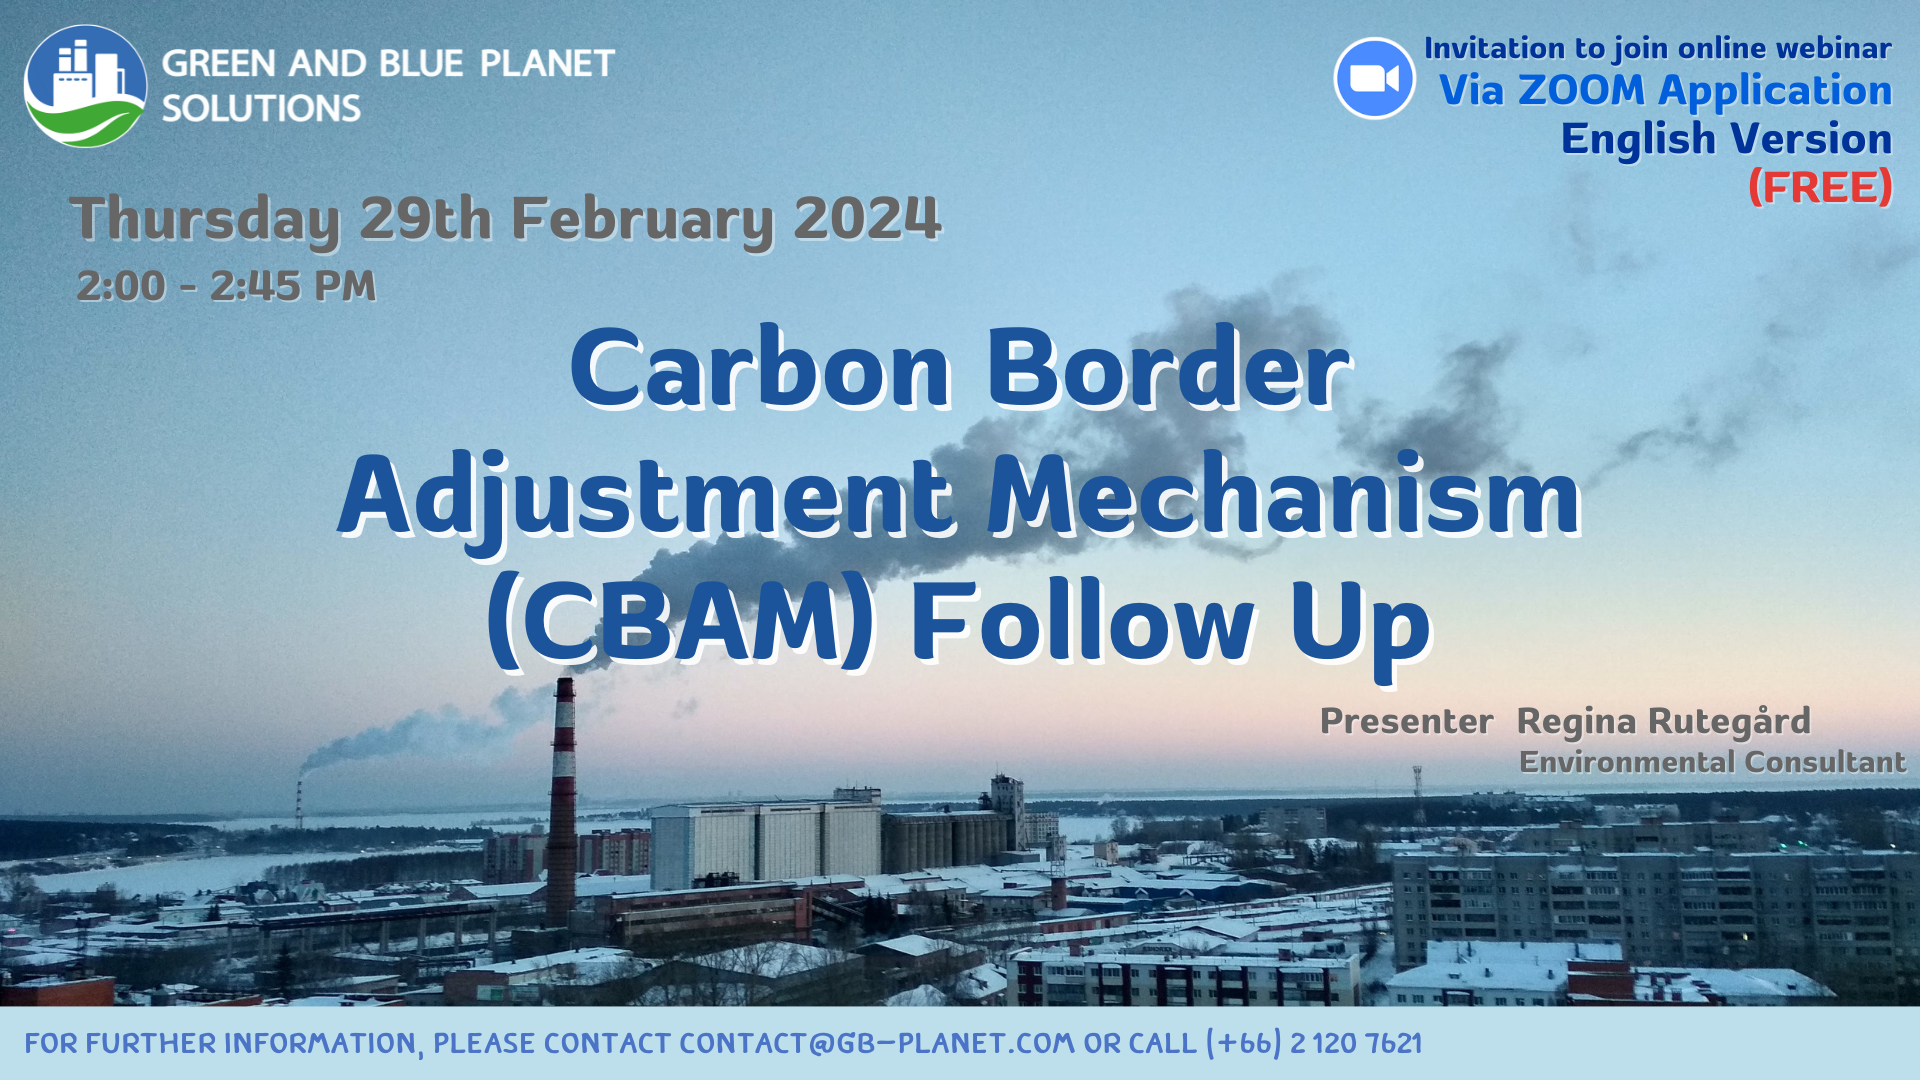 Online Webinar “Carbon Border Adjustment Mechanism (CBAM) Follow Up”